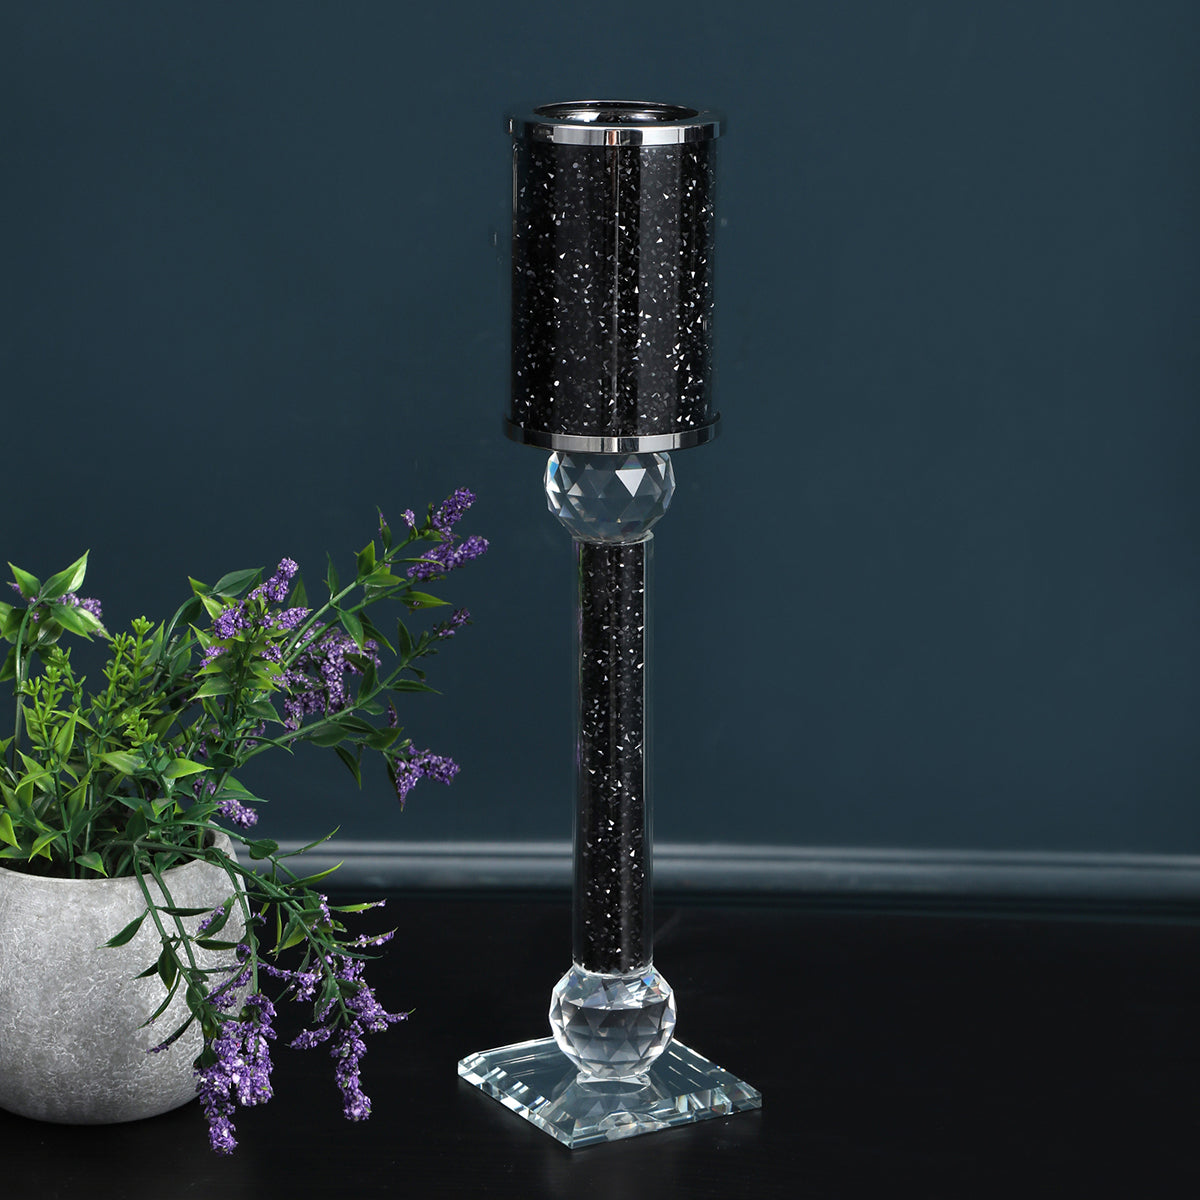 Ambrose Exquisite Medium Candle Holder 2.75" L X 2.75" black-glass